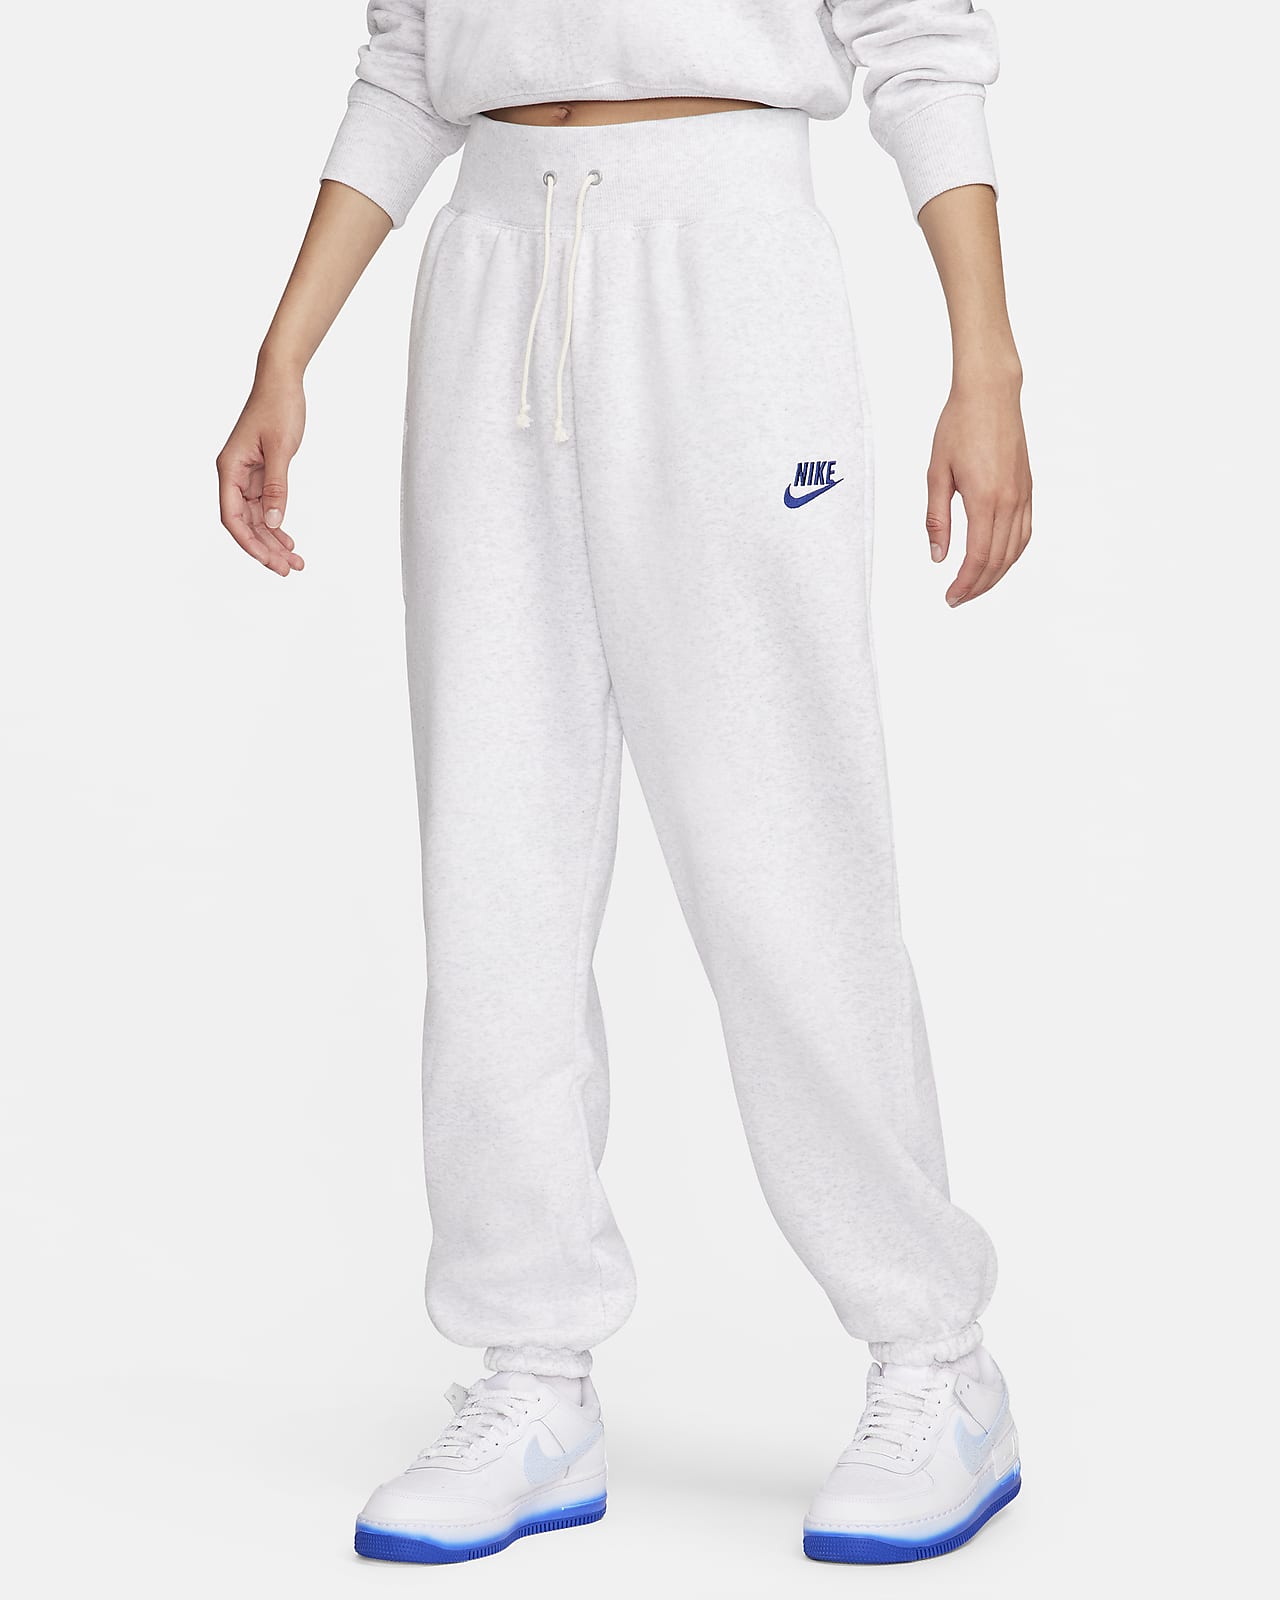 Nike Sportswear Women's High-Waisted Oversized Fleece Sweatpants.